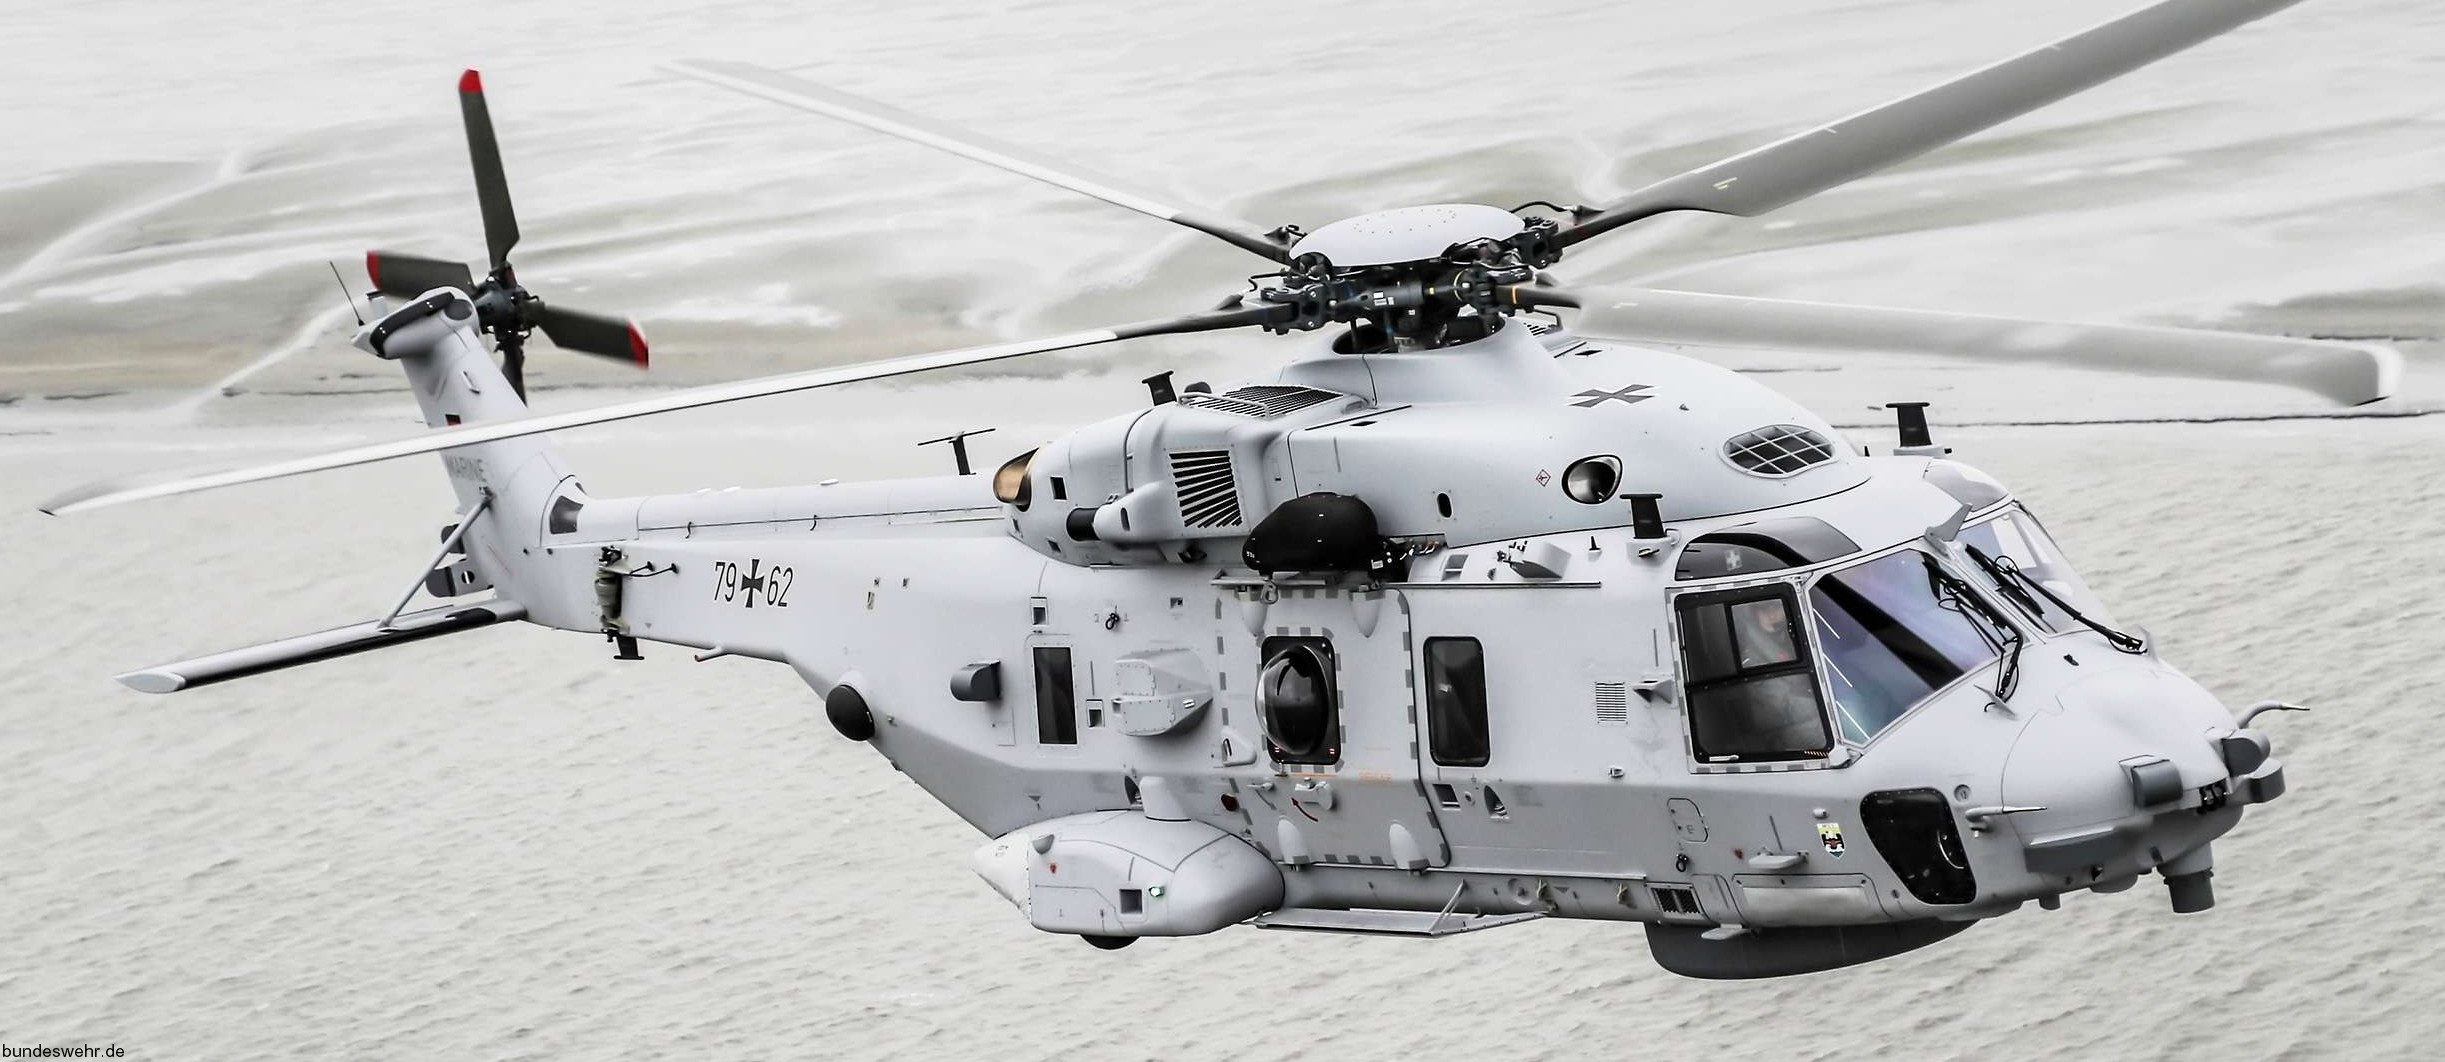 nh-90 nth sea lion helicopter german navy deutsche marine nhindustries mfg-5 nordholz hubschrauber 24